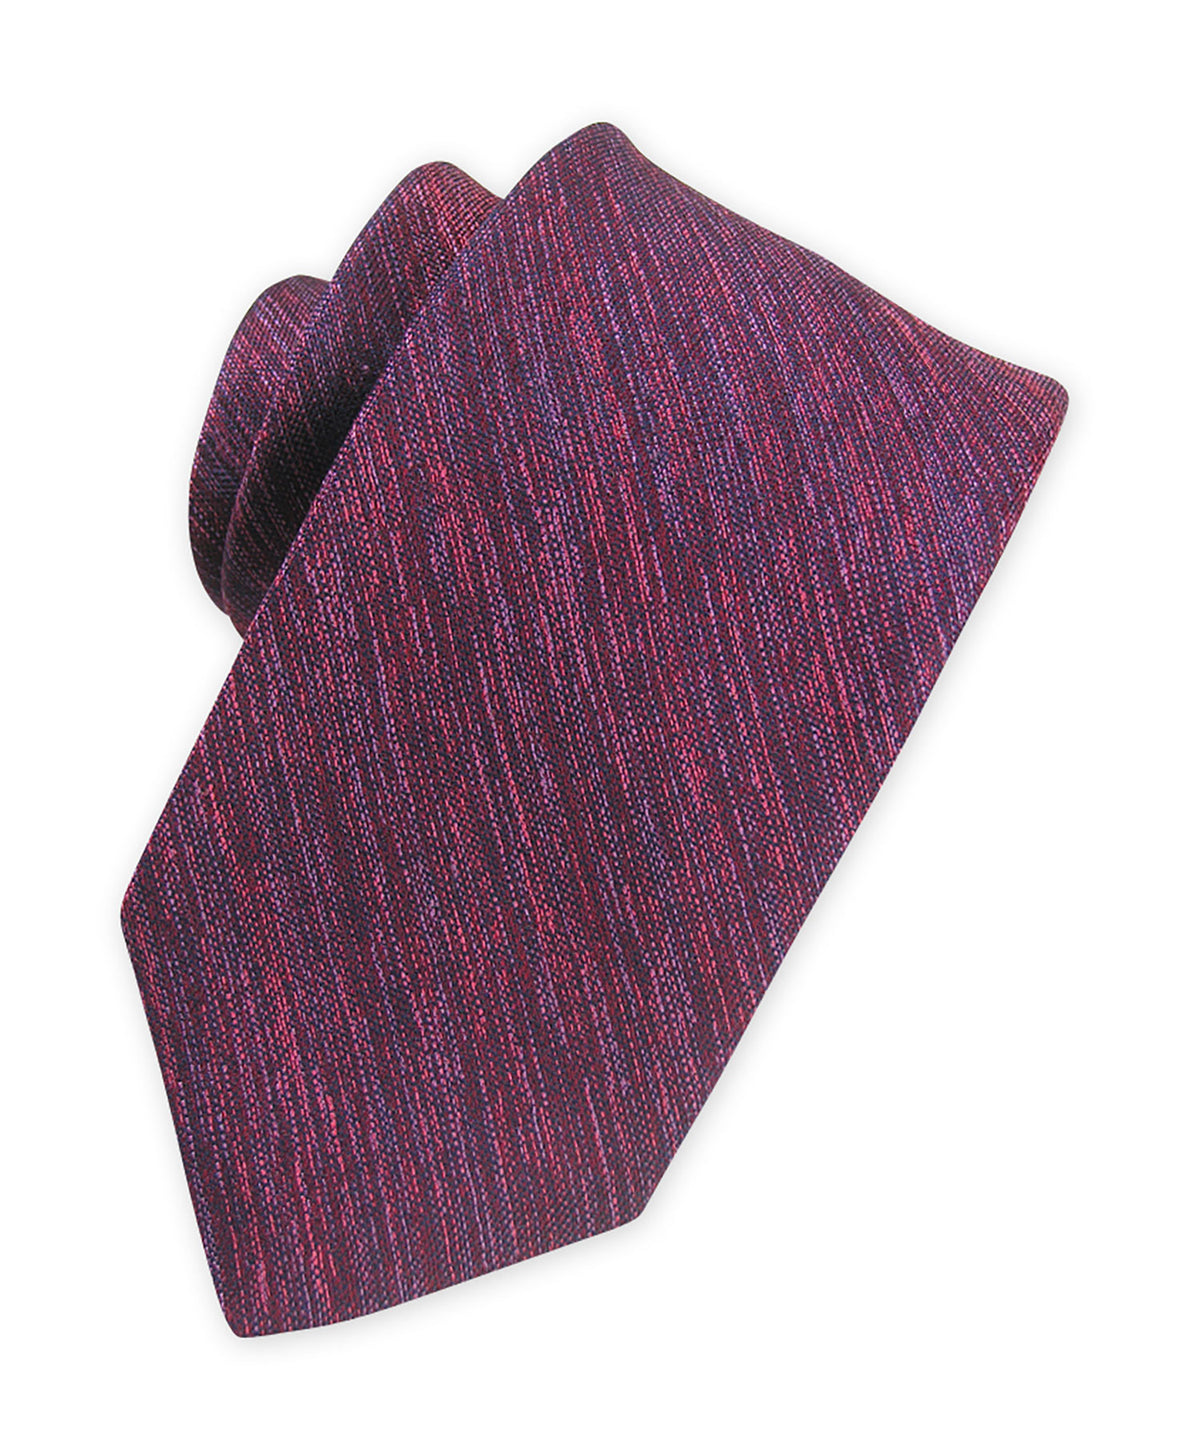 Westport Black Solid Woven Melange Tie, Men's Big & Tall